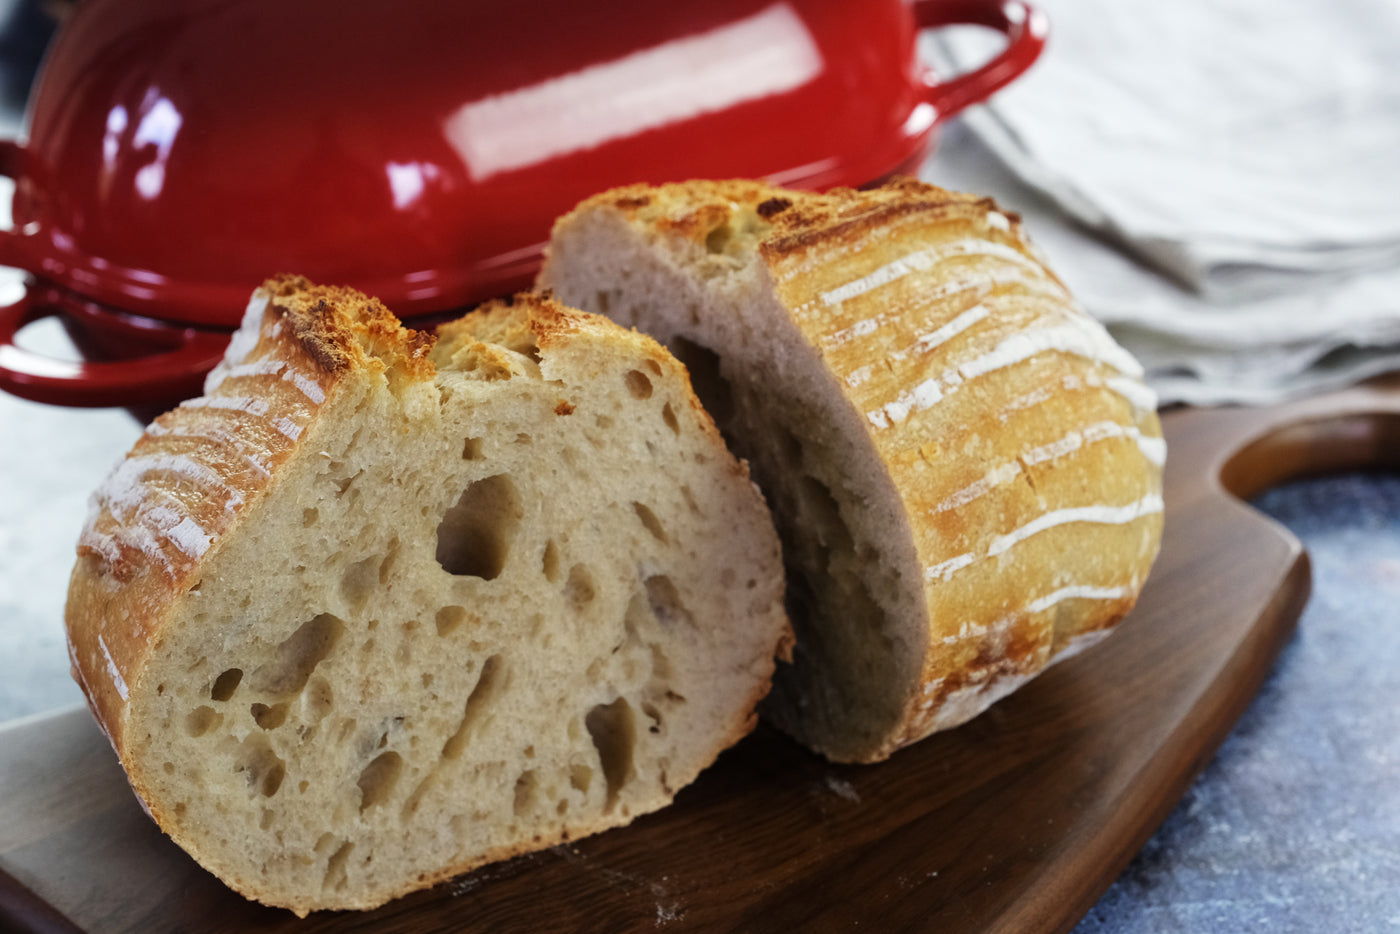 Geëmailleerde gietijzeren broodpan met deksel, rood, ovenveilige vorm voor bakken, ambachtelijke broodset - broodvorm